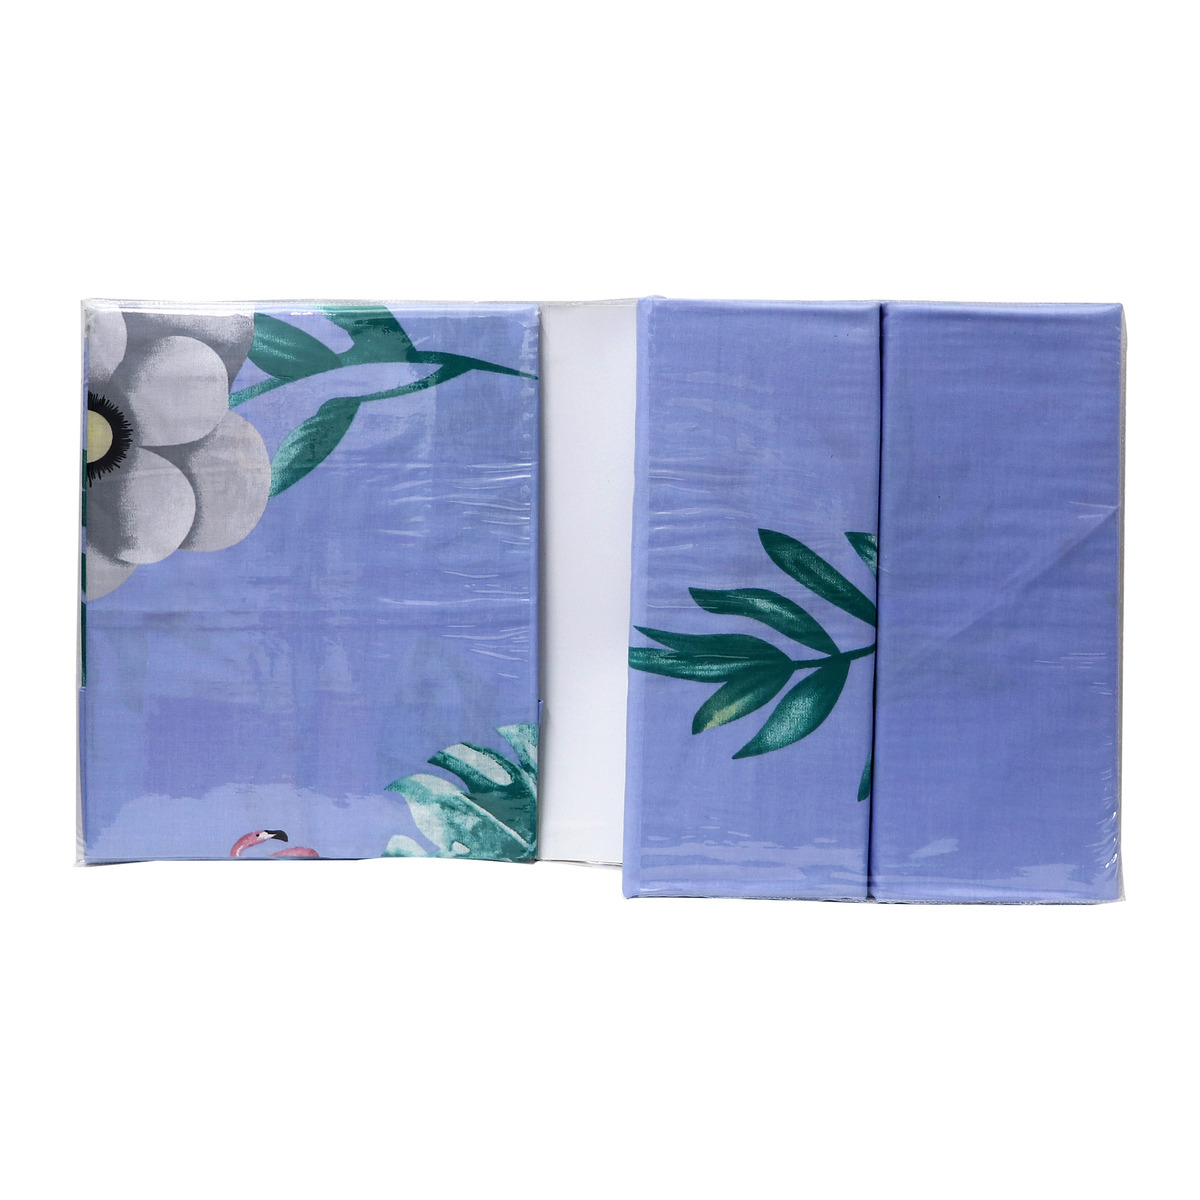 Maple Leaf Bed Sheet King 3pc 20 Assorted Color Bed Sheets Lulu Ksa 1754